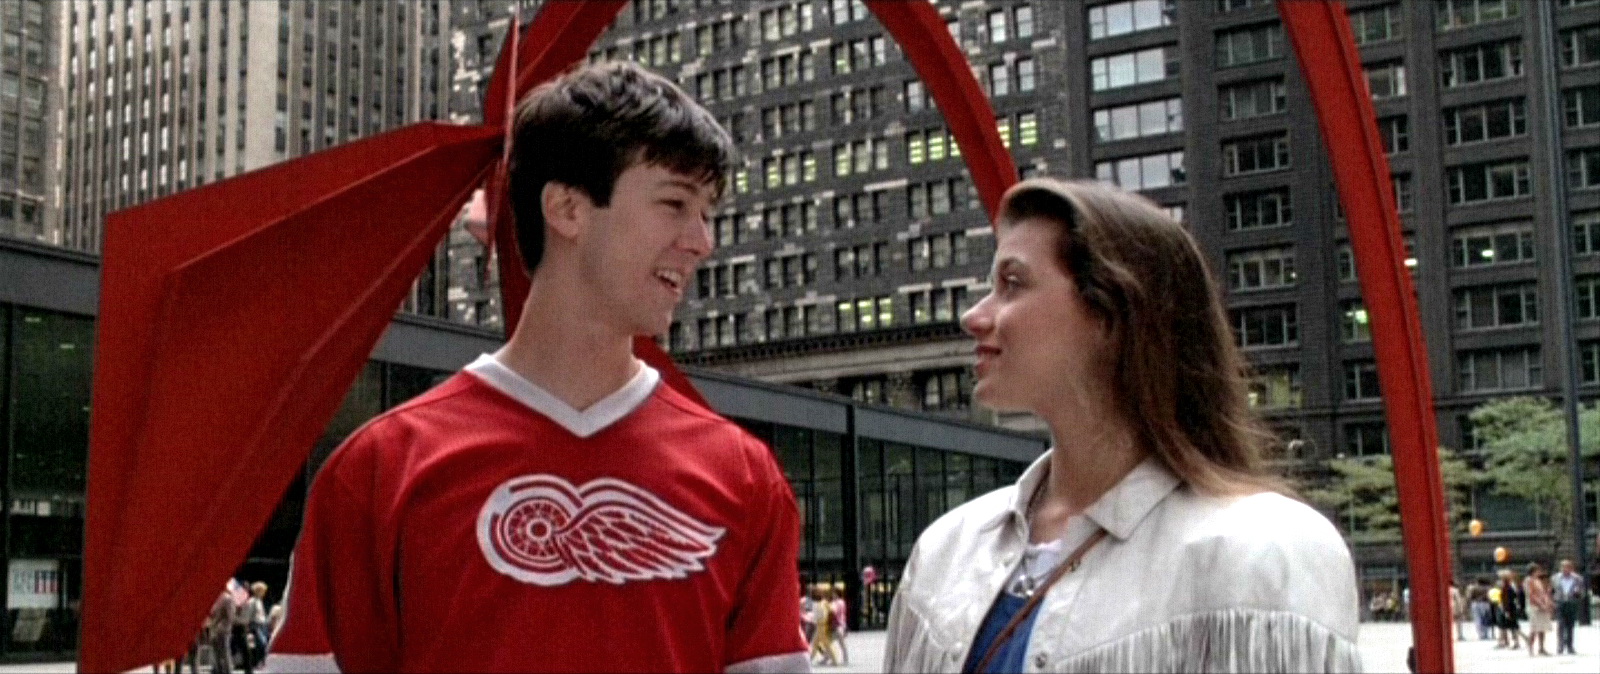 Ο. ως Ferris Bueller έγινε ο χαρακτήρας που σημάδεψε μια ολόκληρη γενιά εφή...